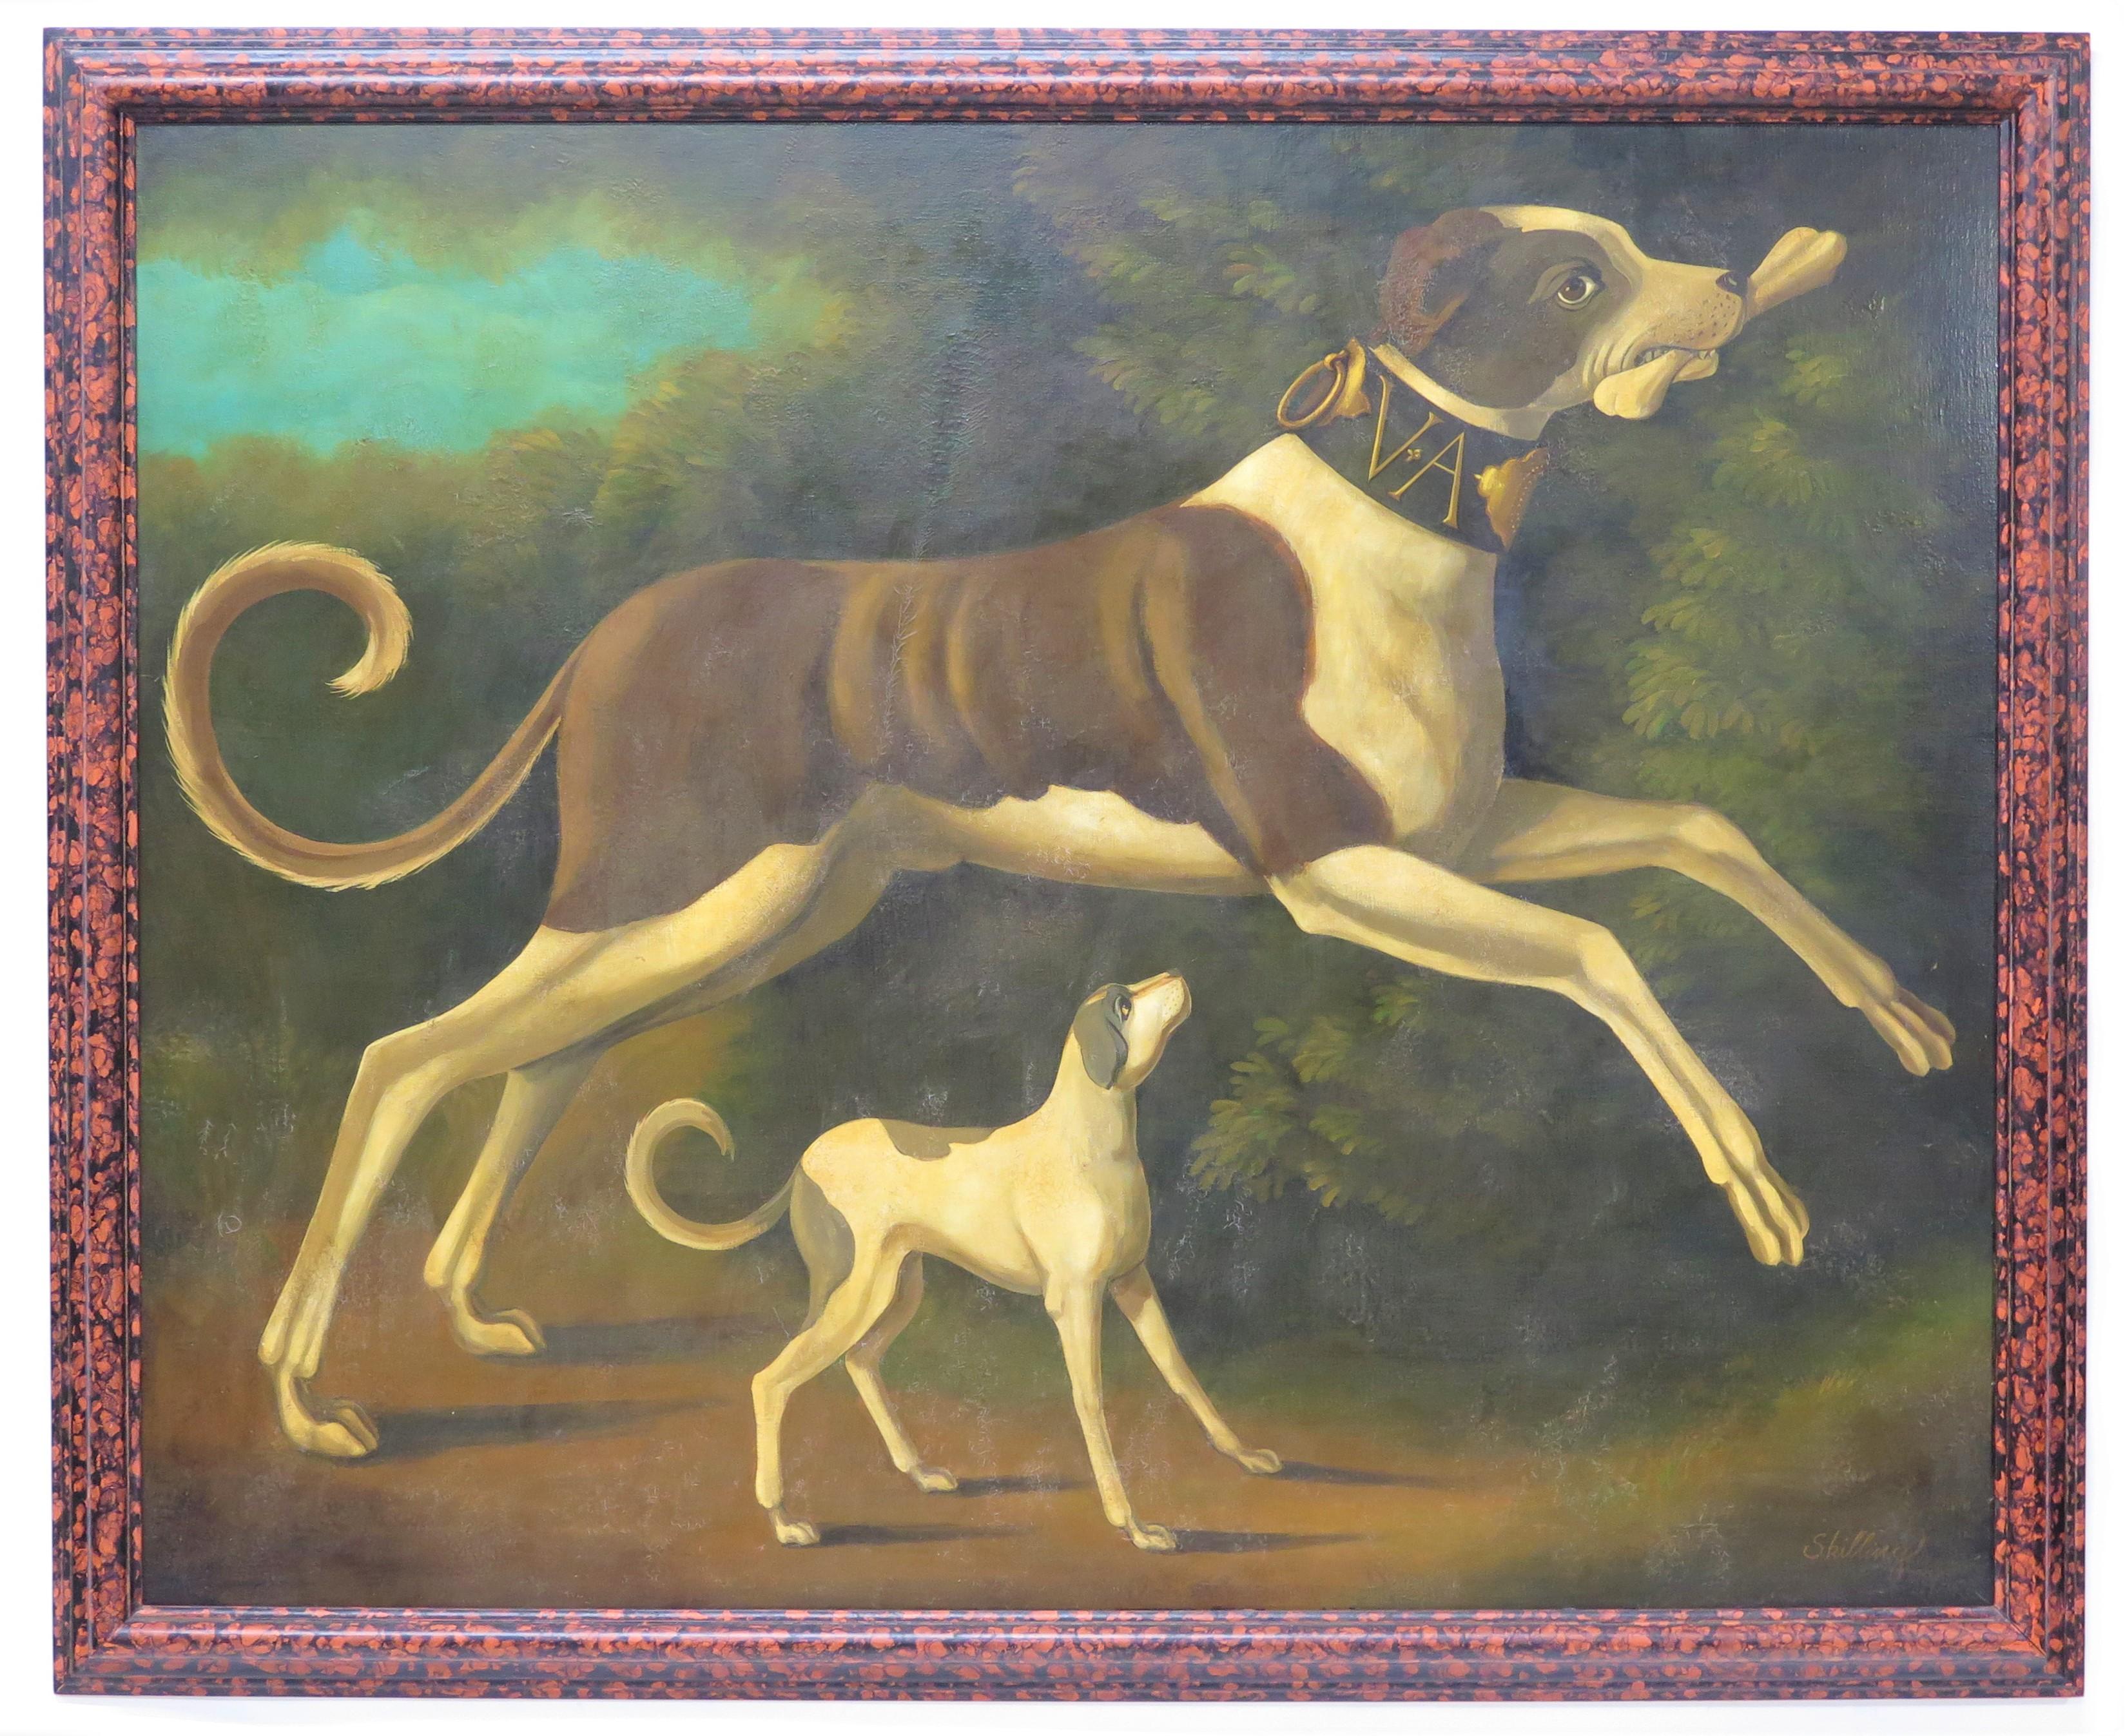 Peinture à l'huile sur toile représentant deux chiens en plein ébat, exécutée dans un style humoristique de peinture de salon victorienne, avec un vieillissement artificiel, une finition vieillie et un cadre en fausse tortue, signée Skilling en bas